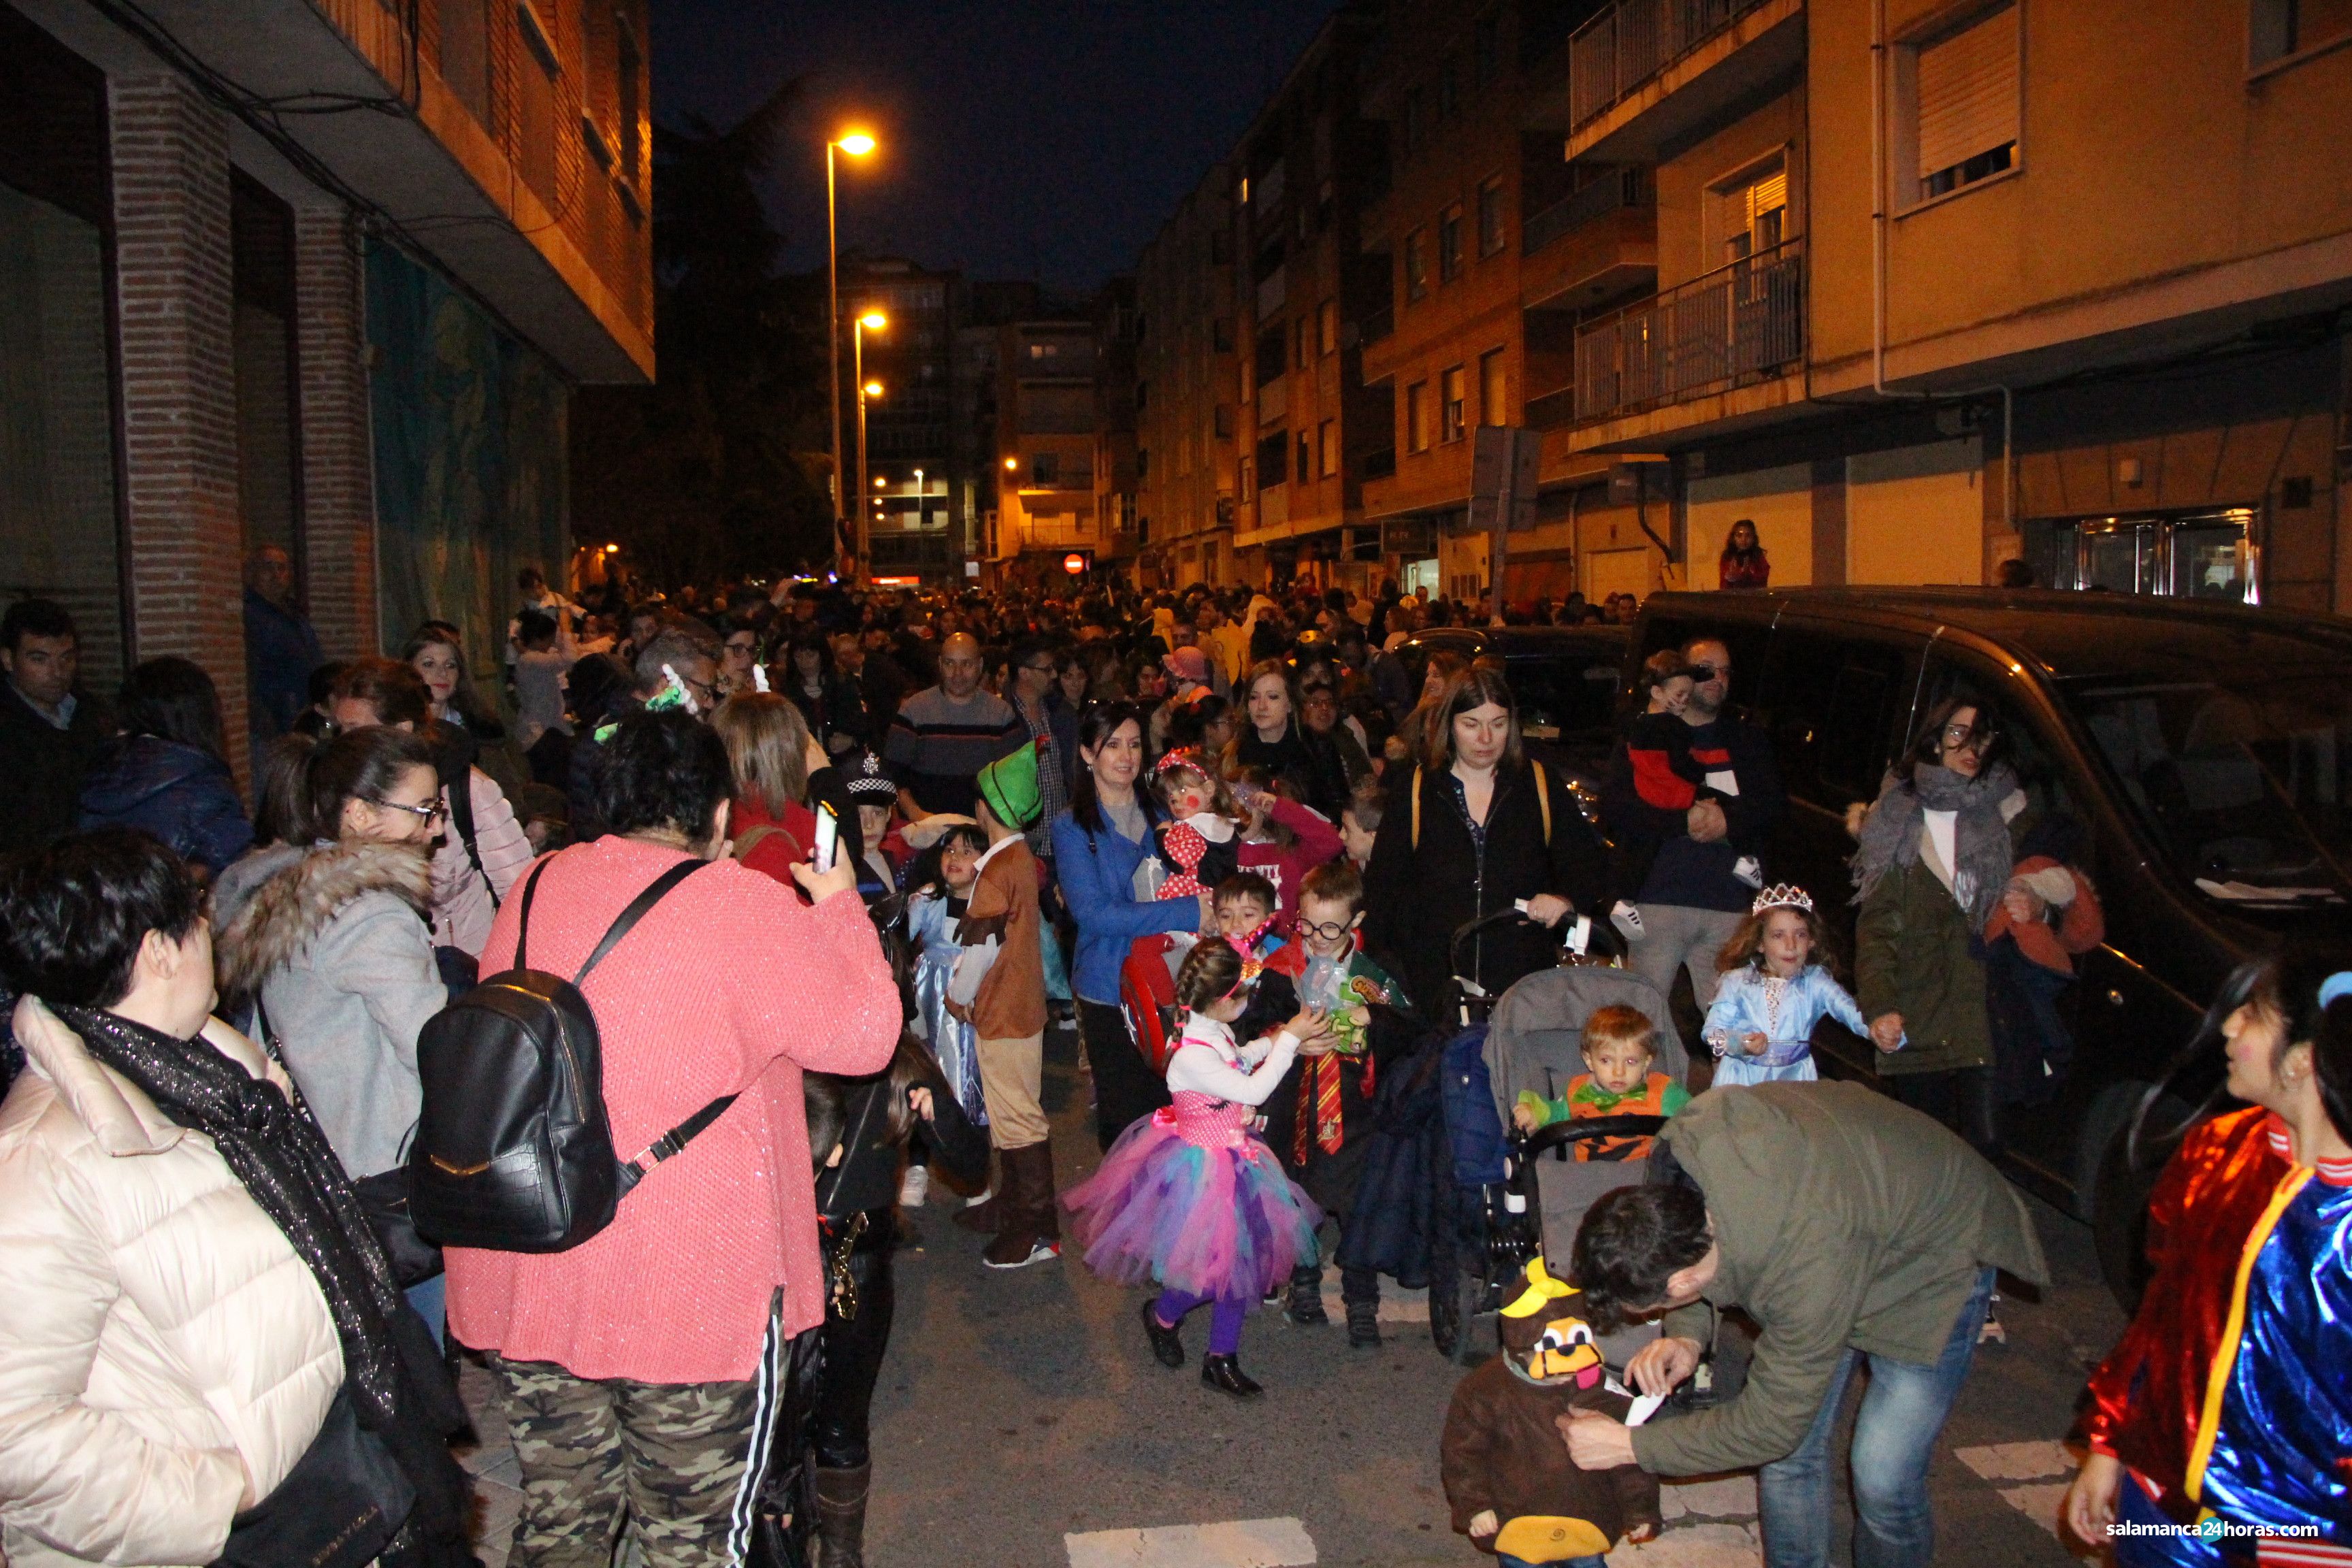  Carnaval barrio del oeste (24 02 2020) (40) 